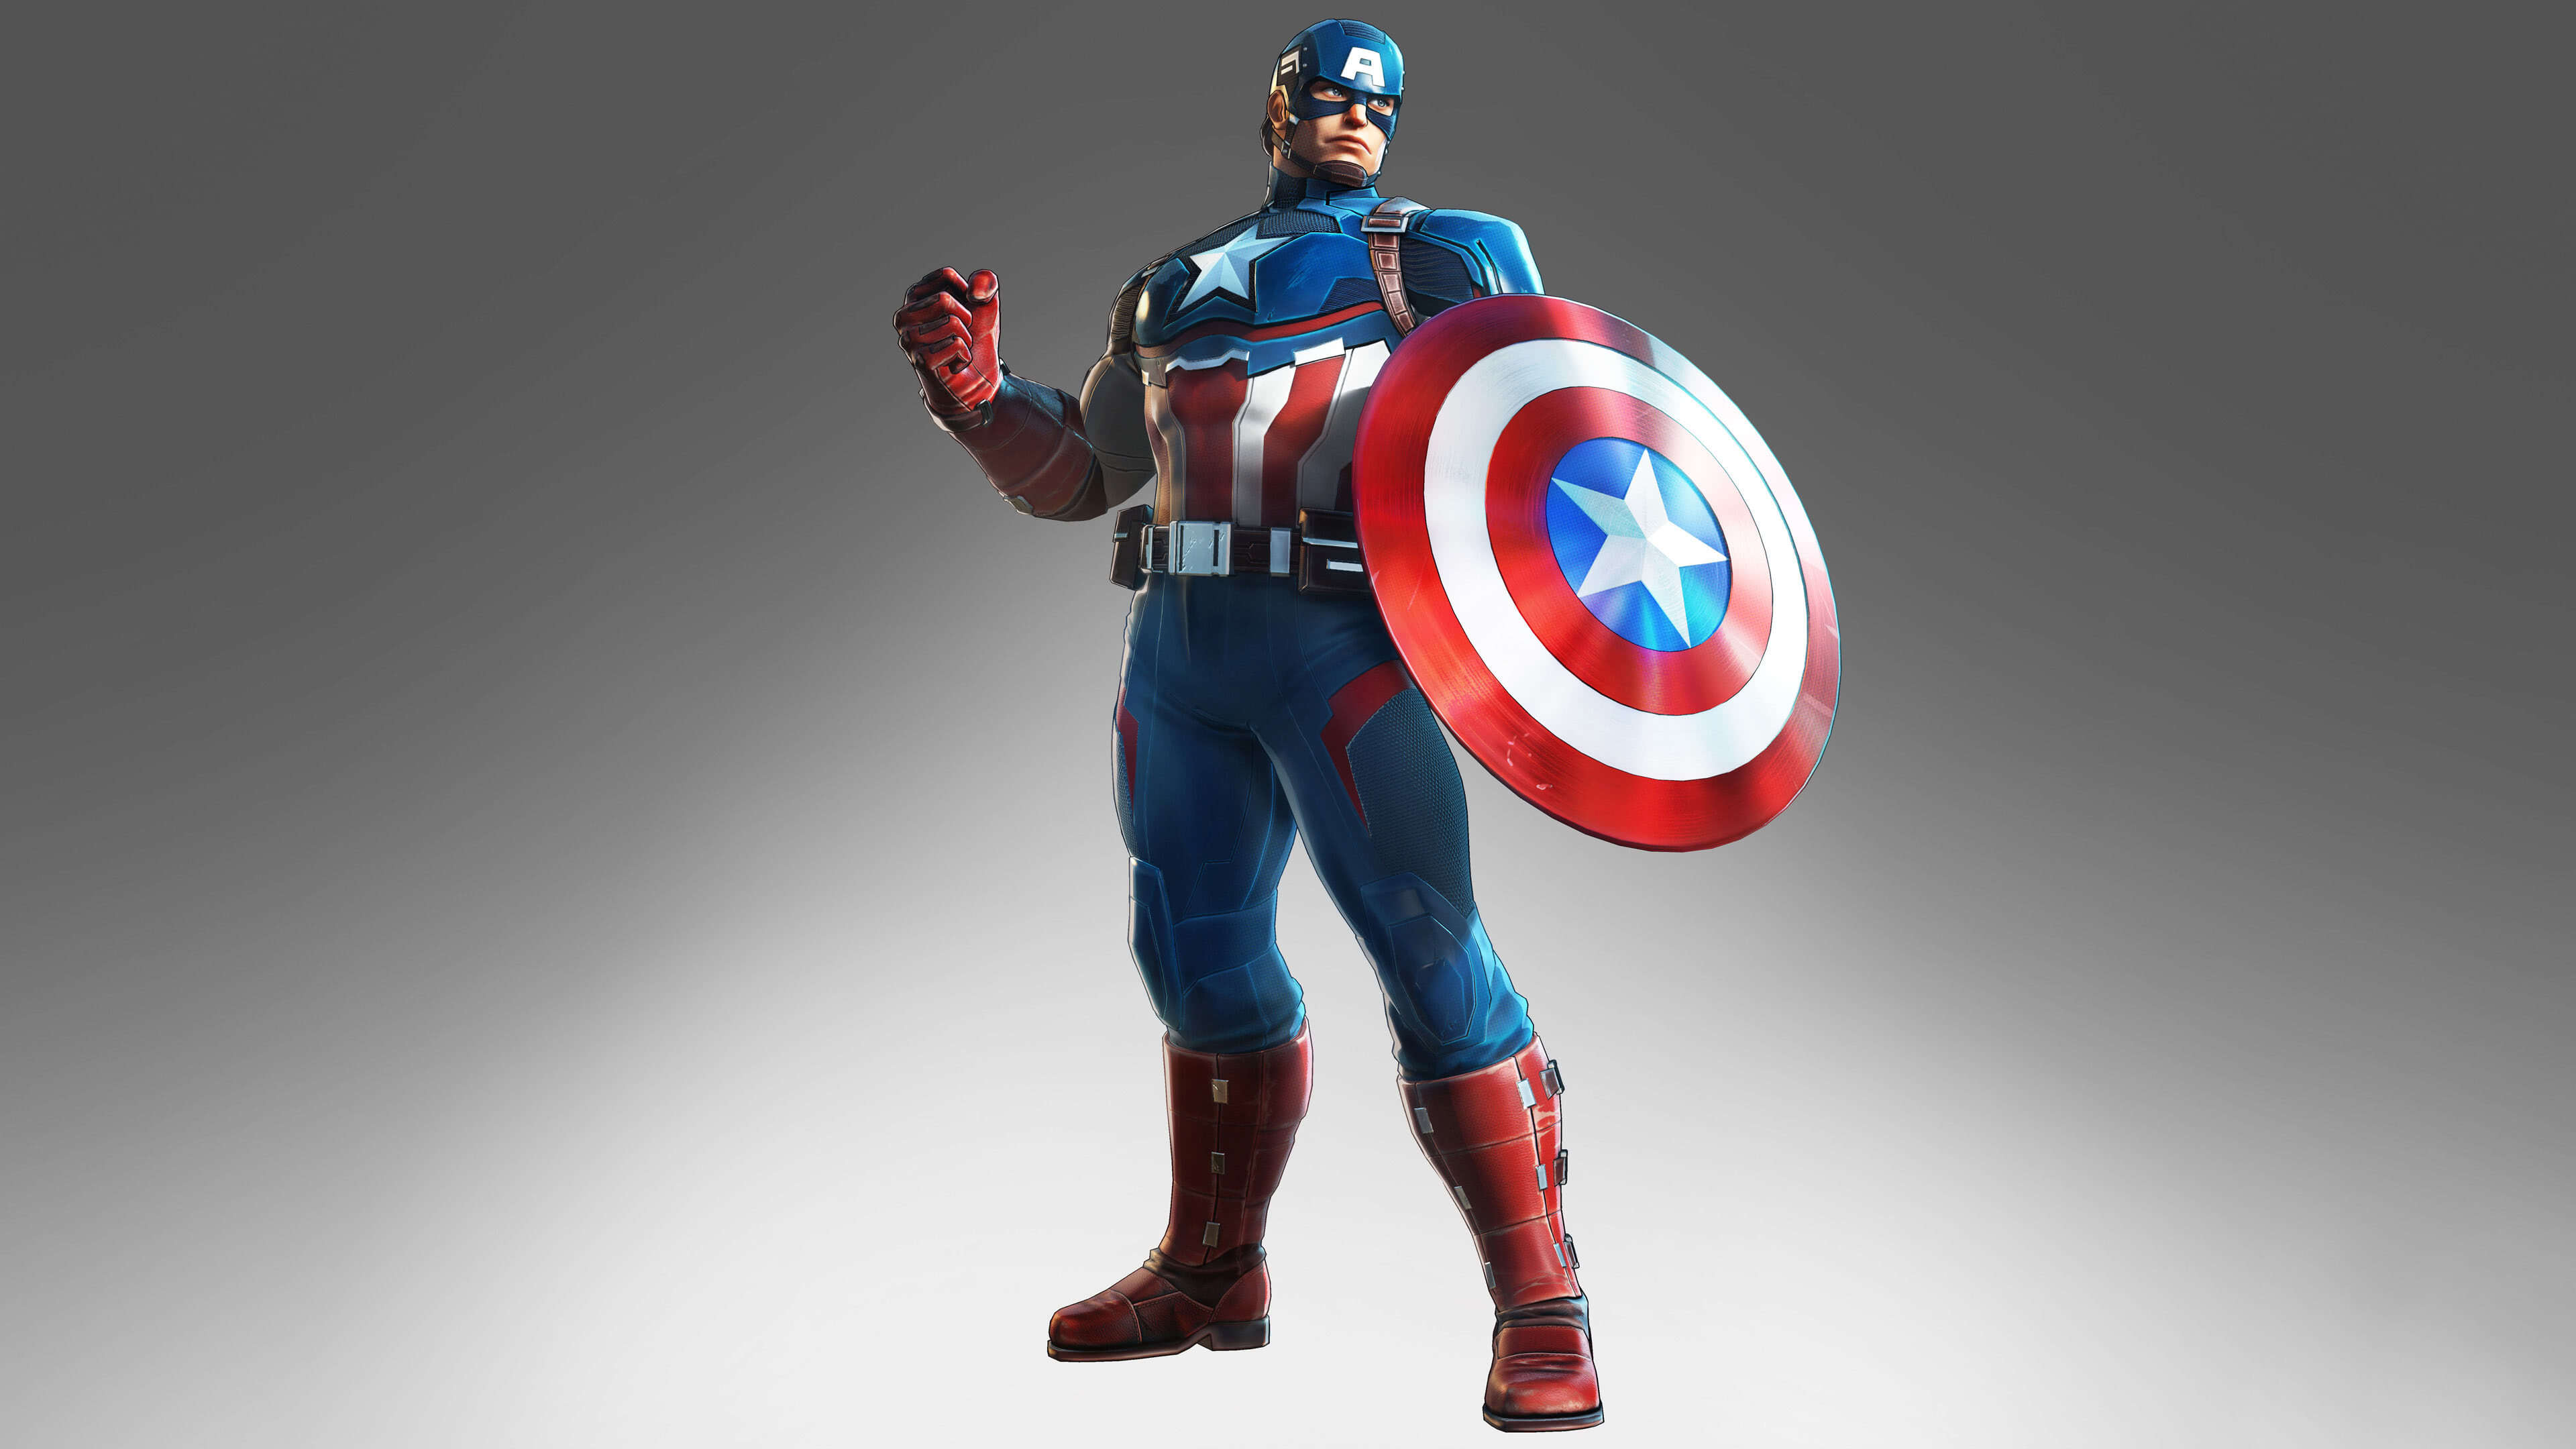 Marvel Ultimate Alliance 3 Captain America UHD 4K Wallpaper | Pixelz